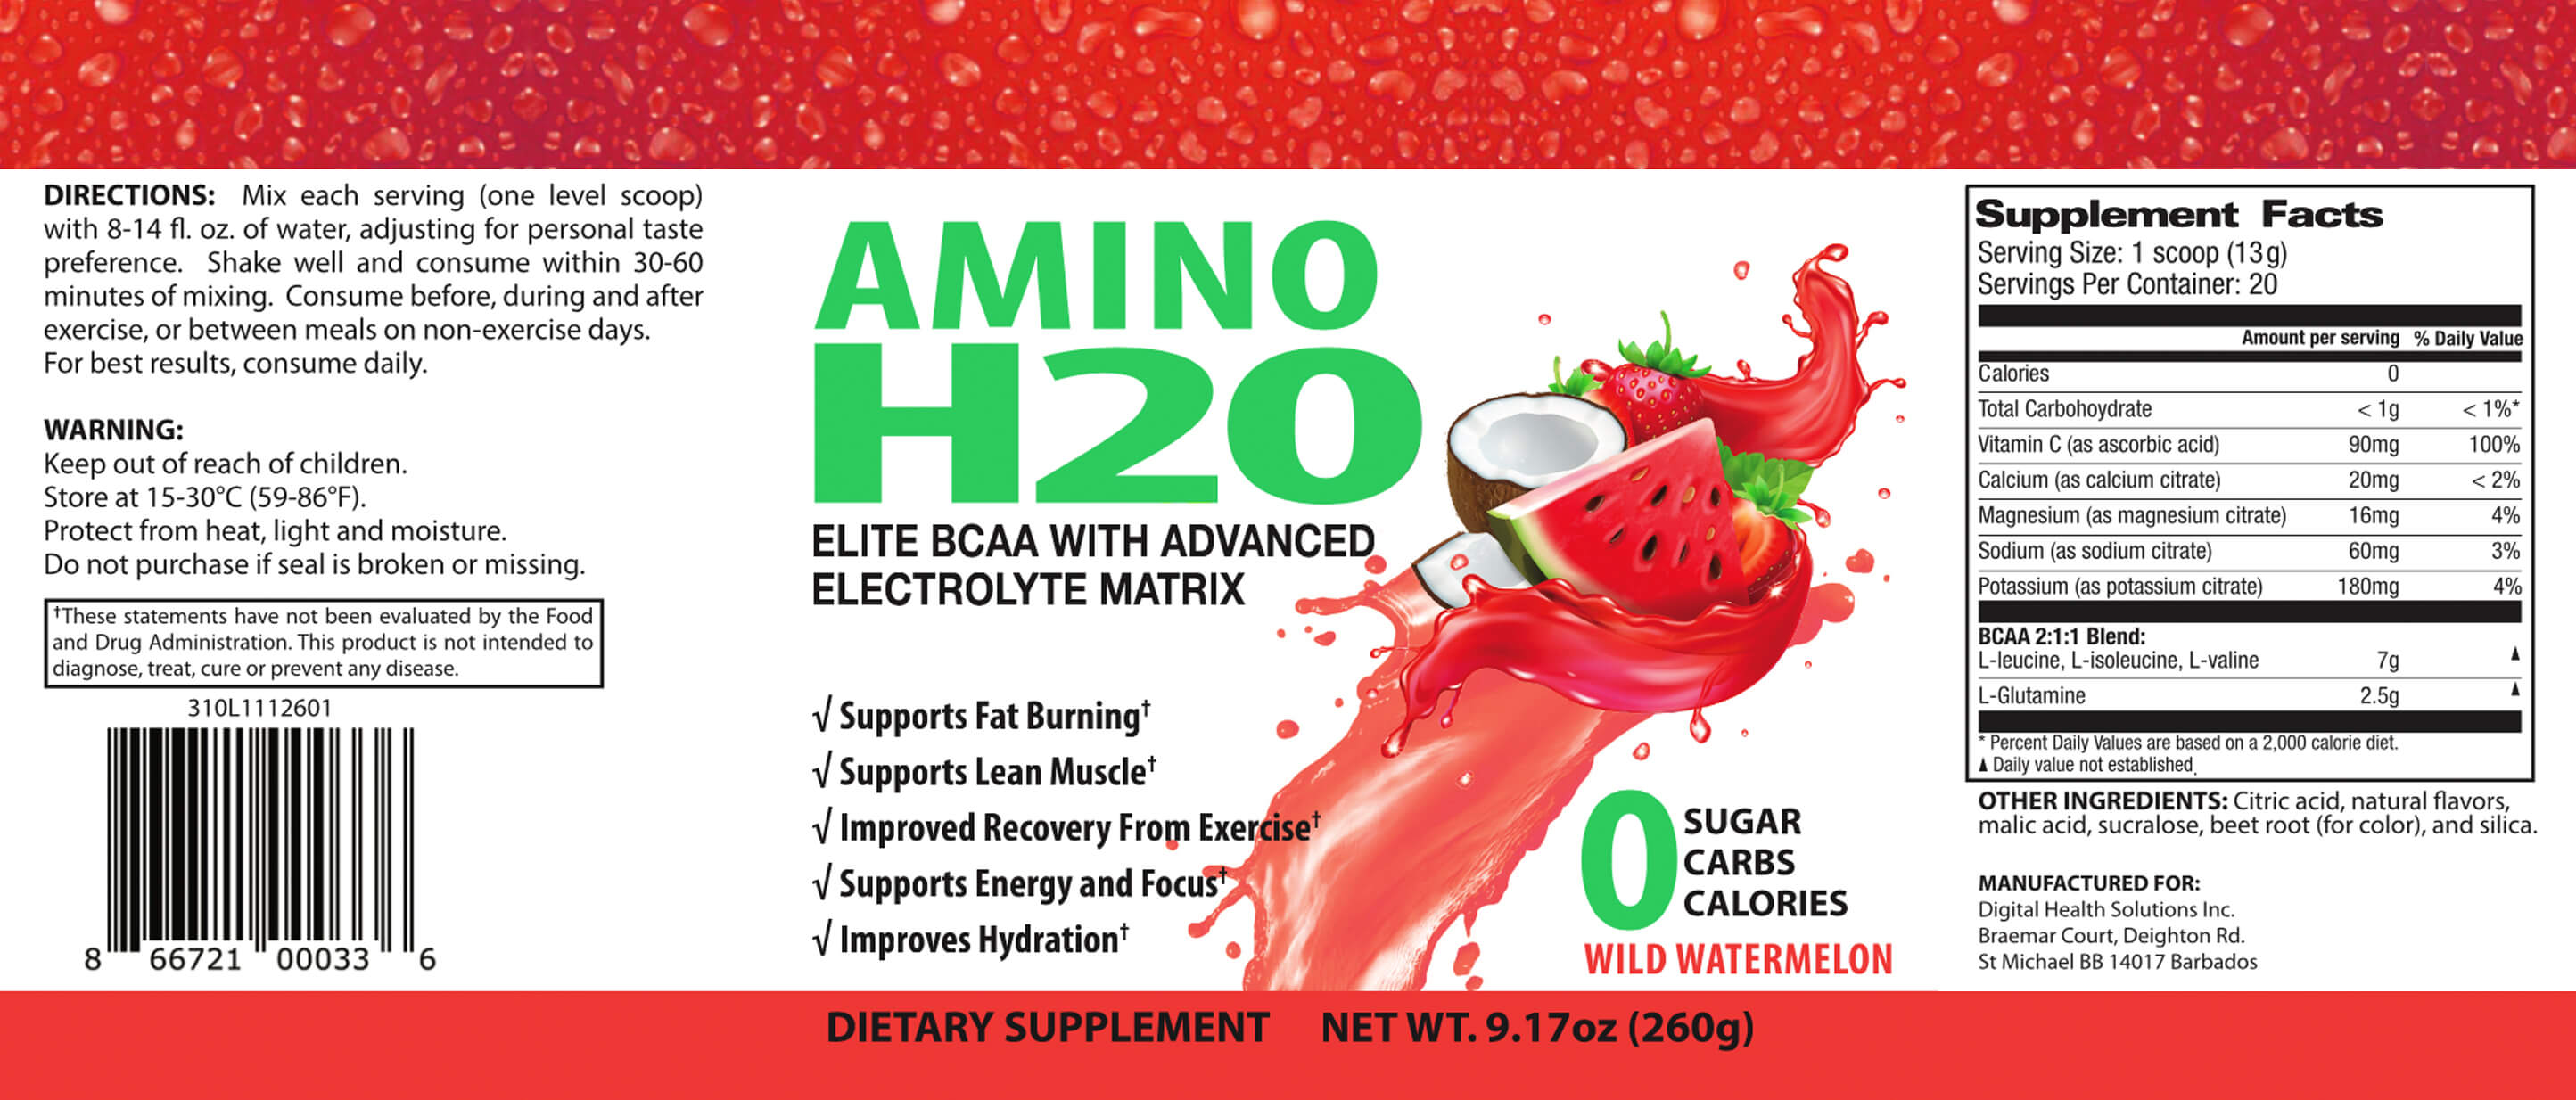 Amino Wild Watermelon Label